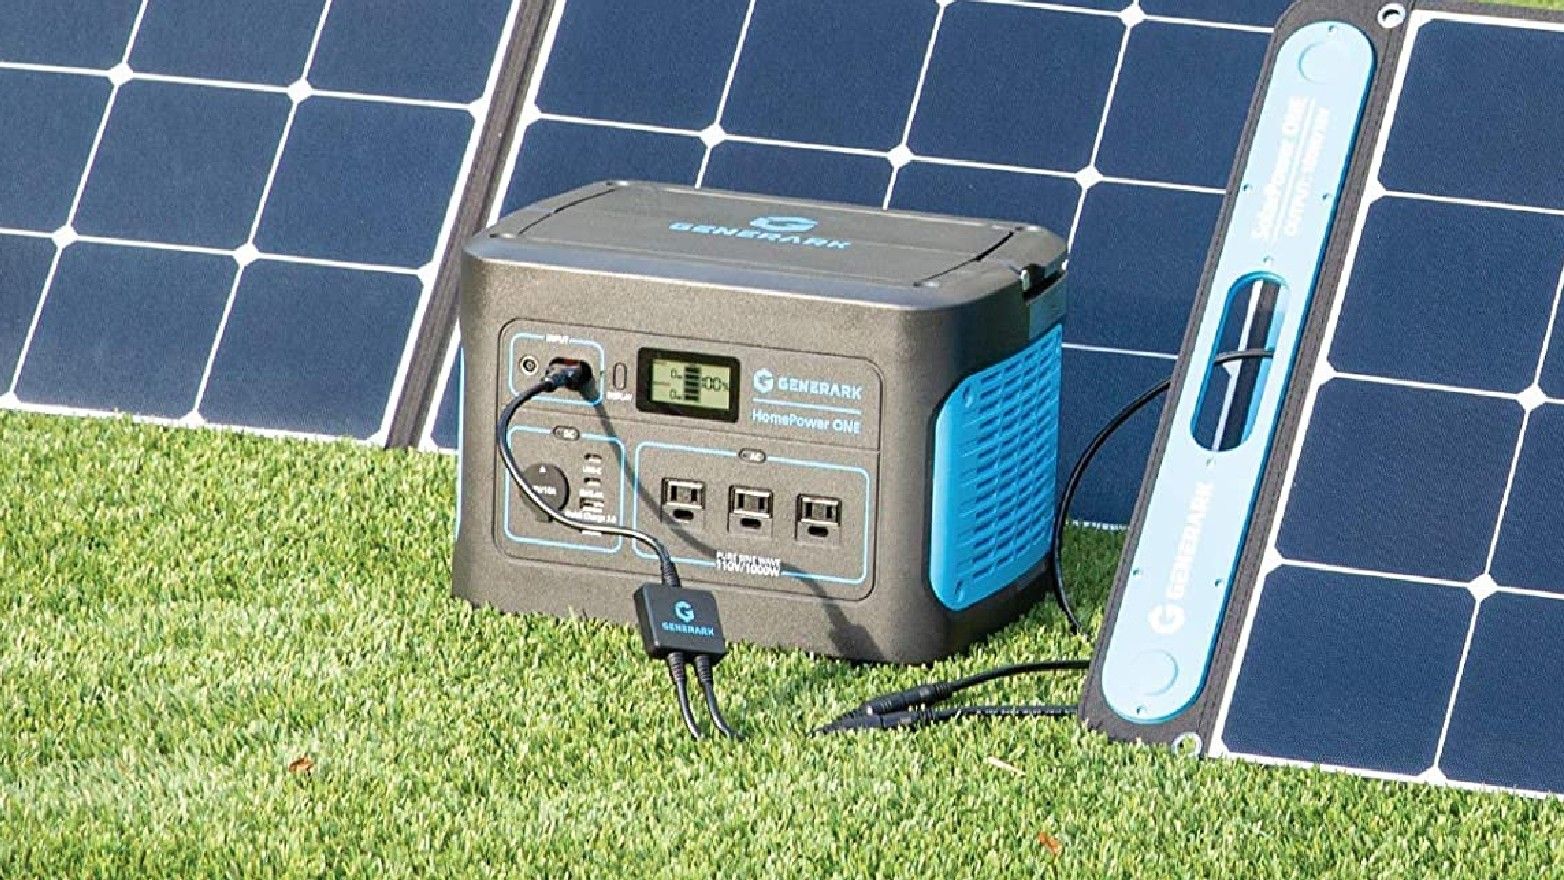 A solar generator on a lawn